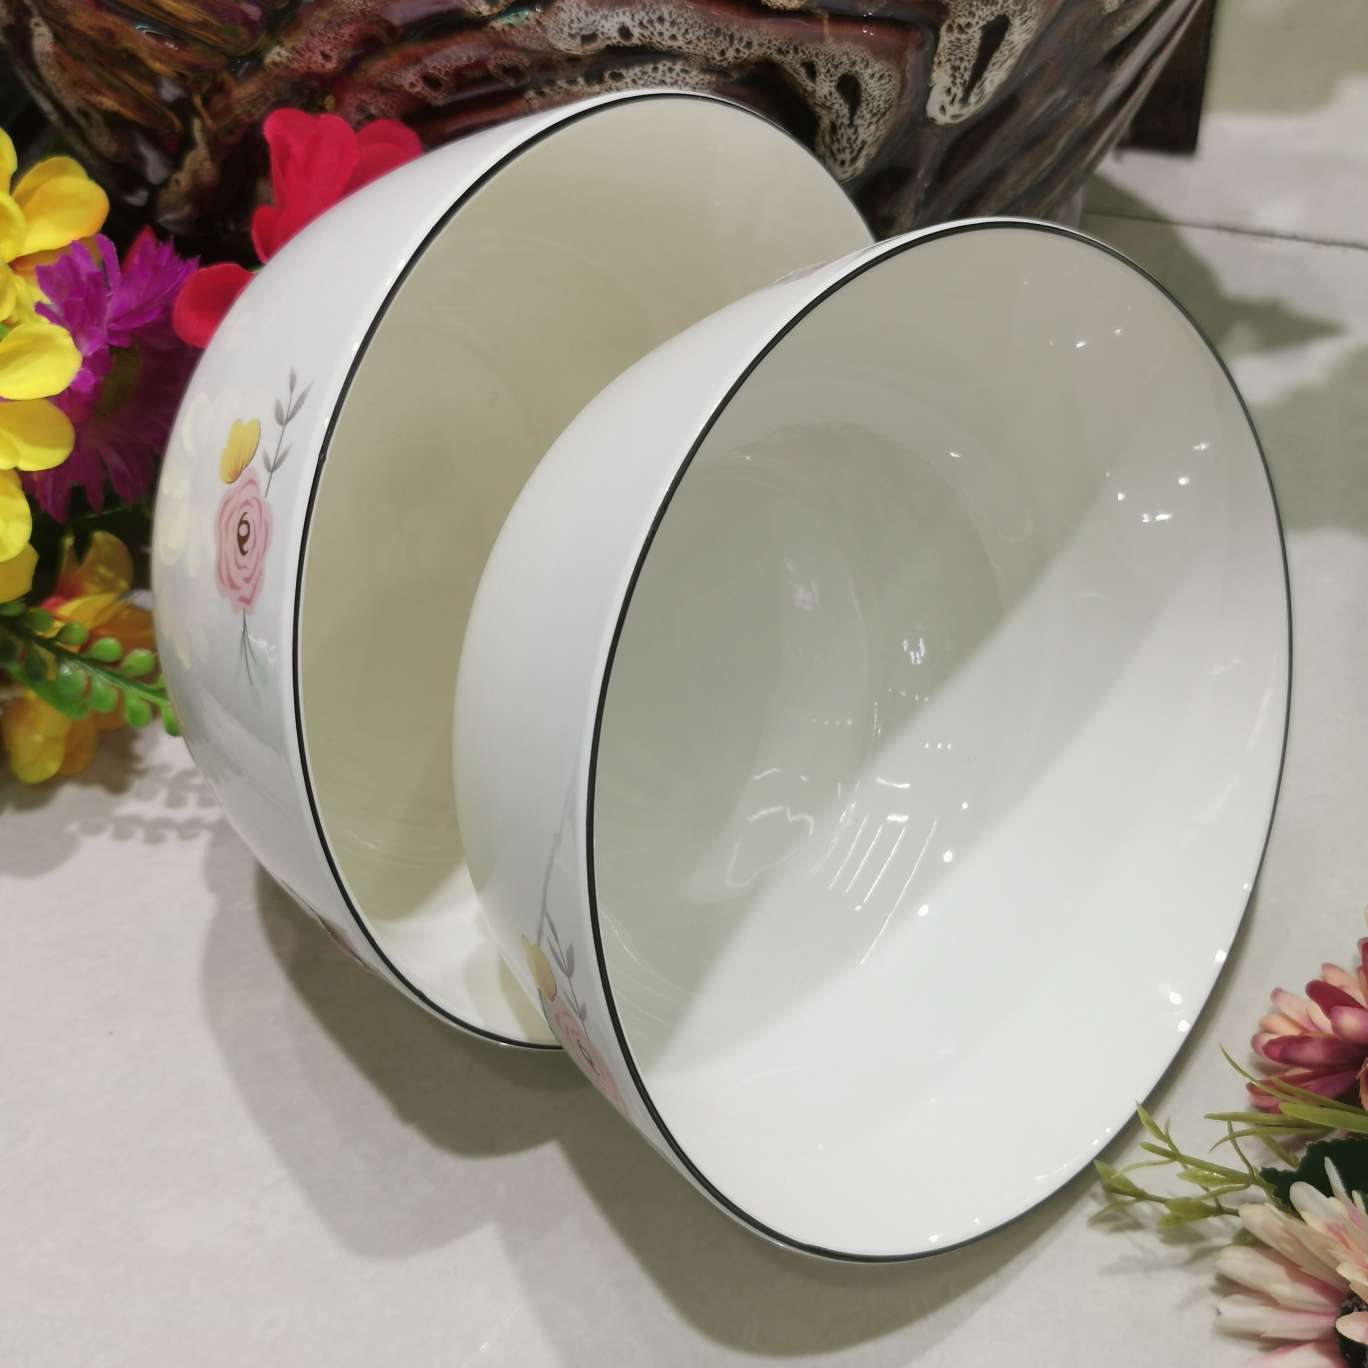 7沙拉碗春暖花开陶瓷日用百货家居用品质量可靠